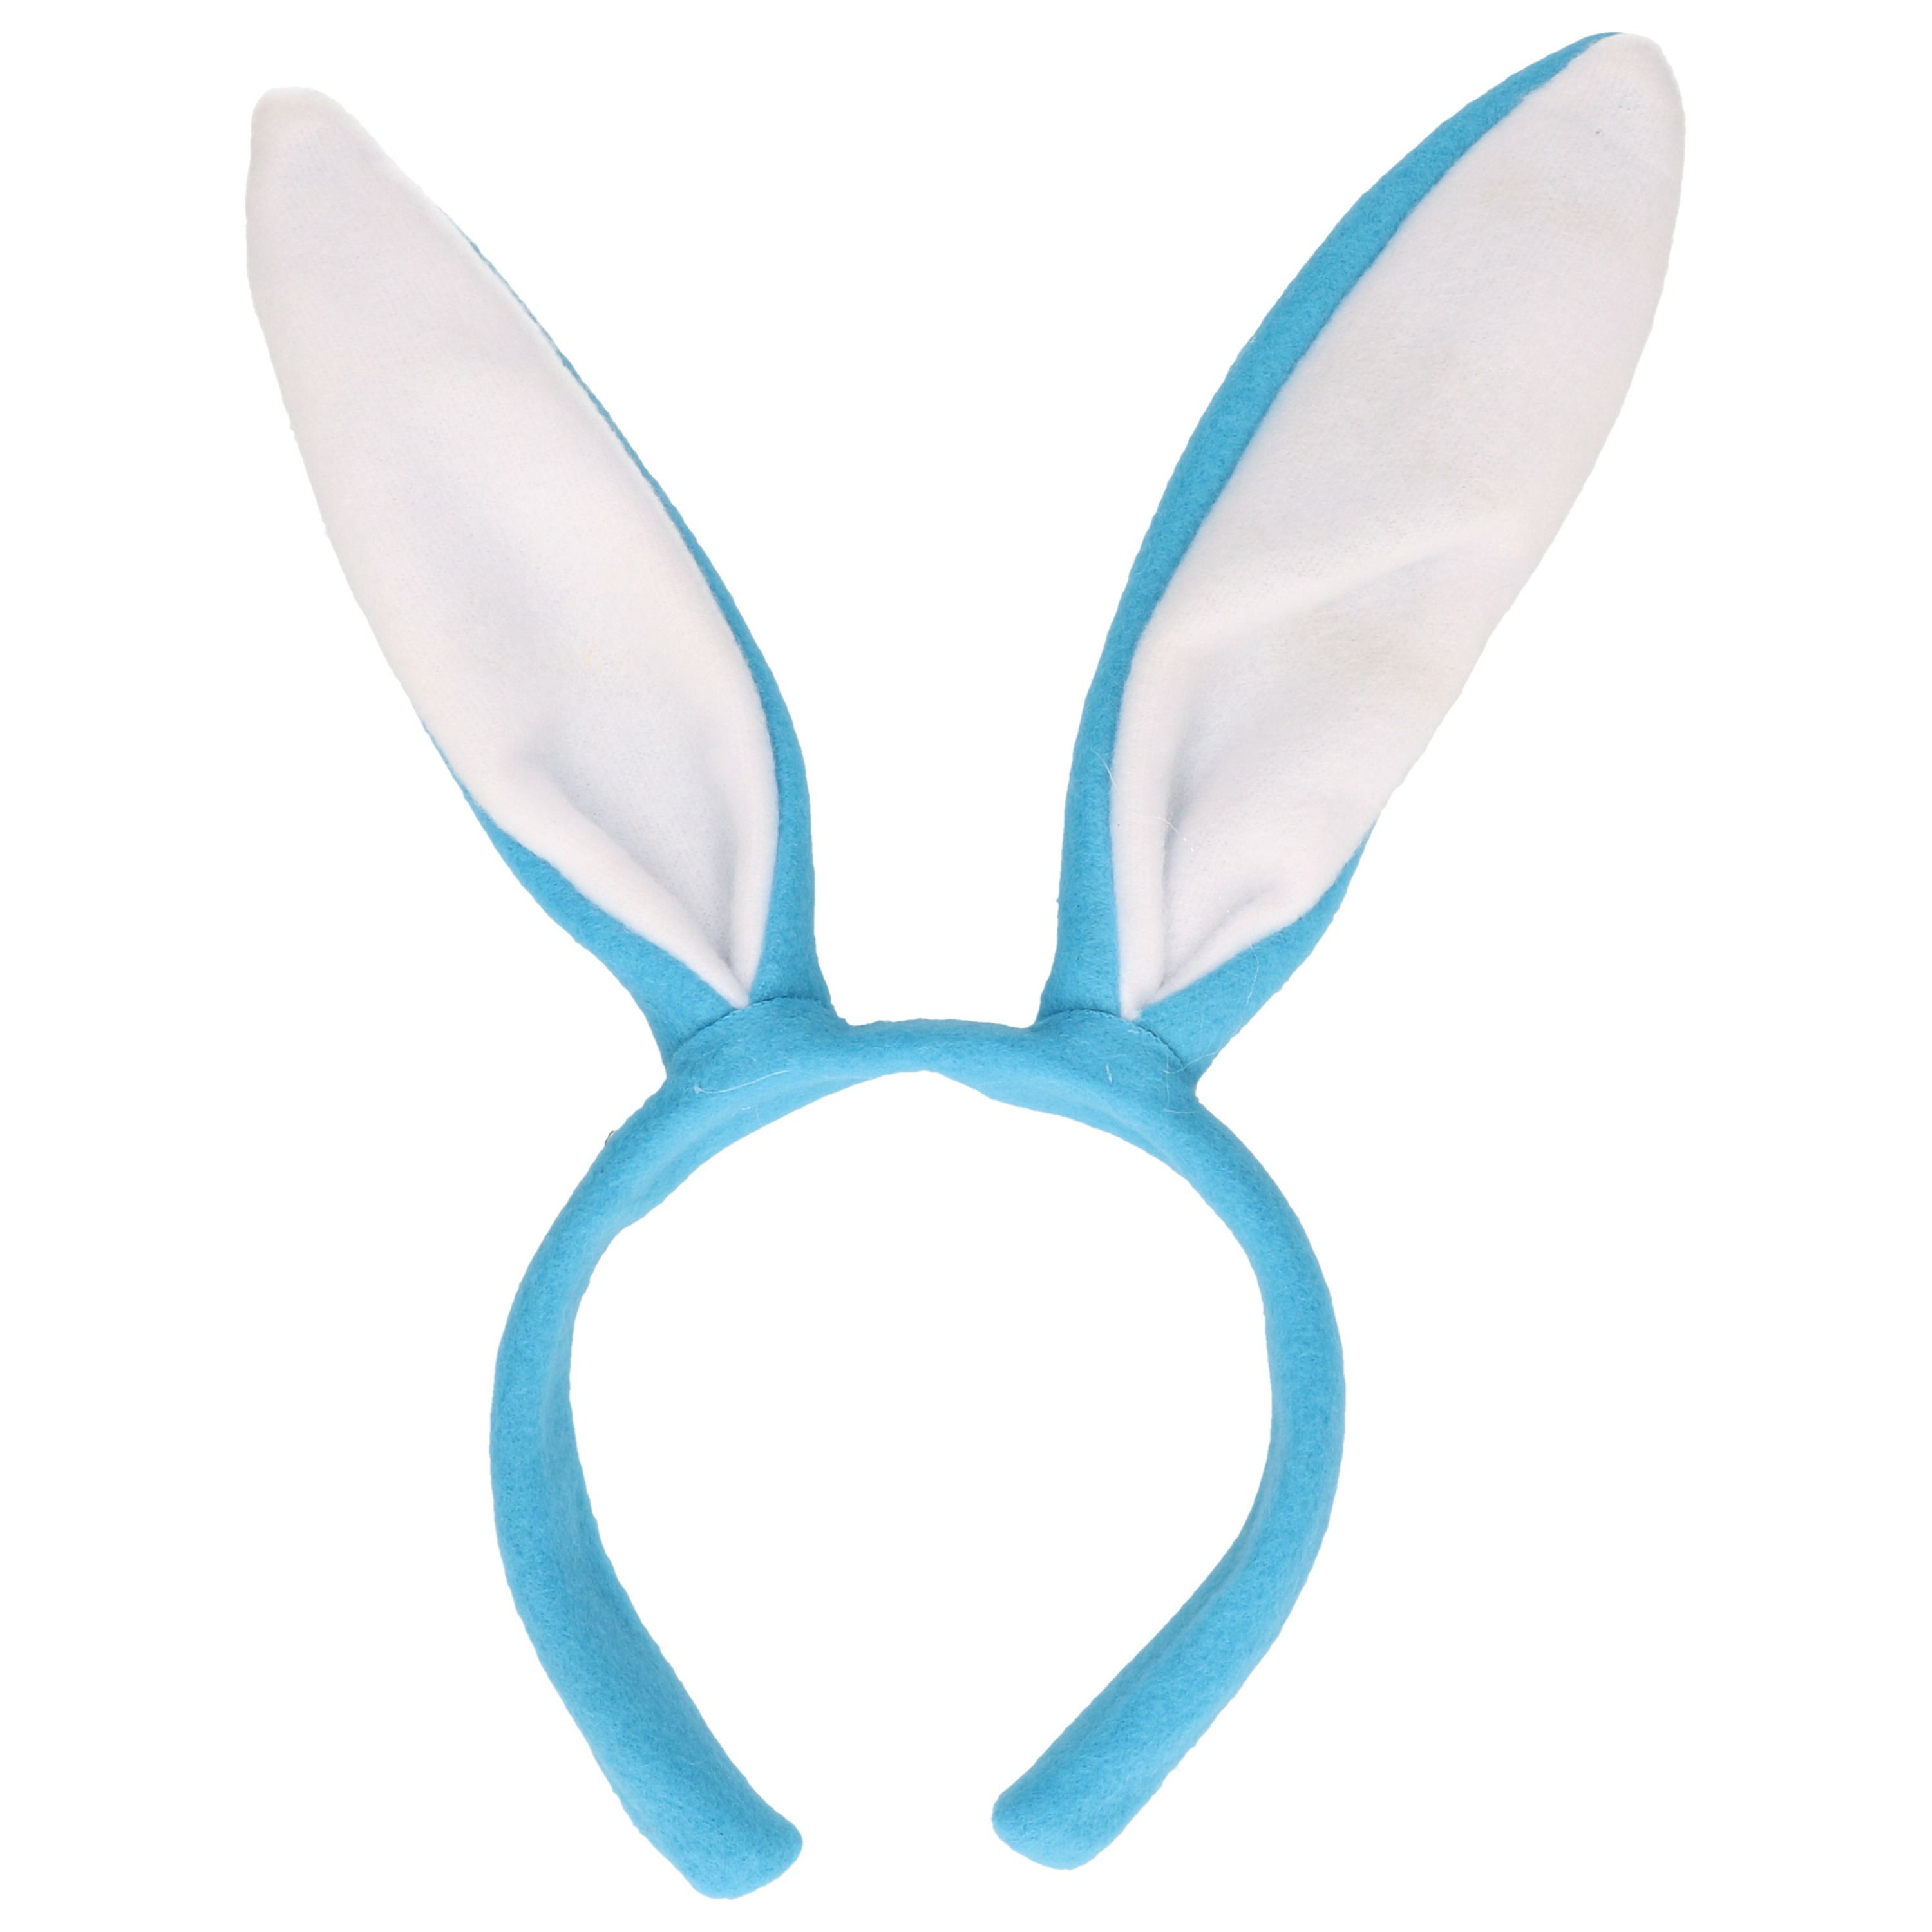 Konijnen-bunny oren licht blauw met wit voor volwassenen 27 x 28 cm